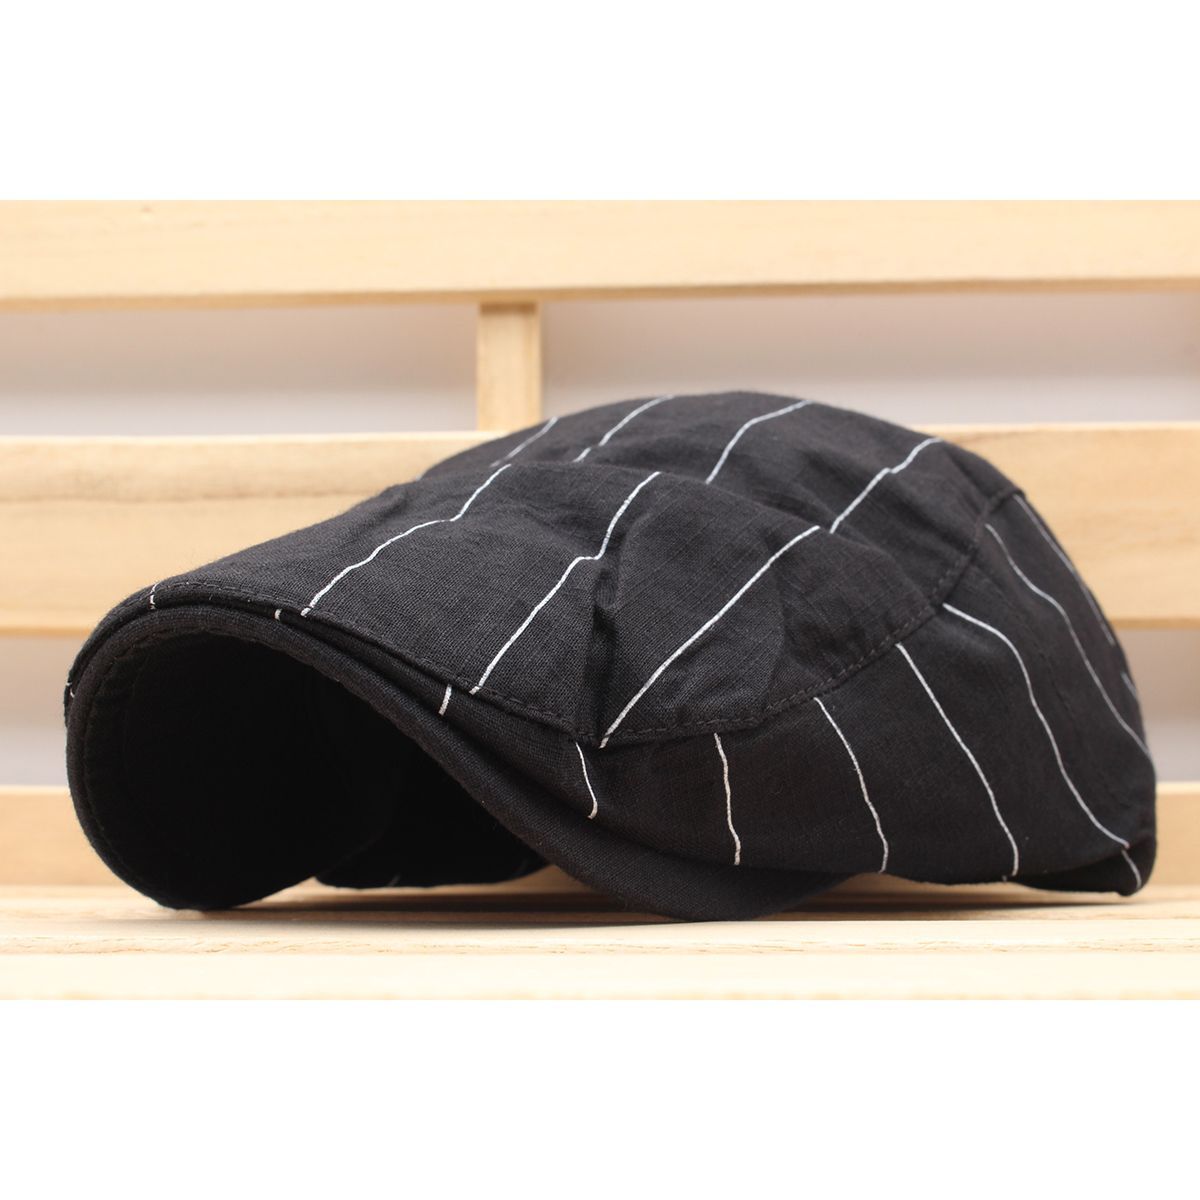 ハンチング帽子 ストライプ柄 綿 帽子 キャップ 56cm~58cm メンズ レディース BK HC200-1 - メルカリ